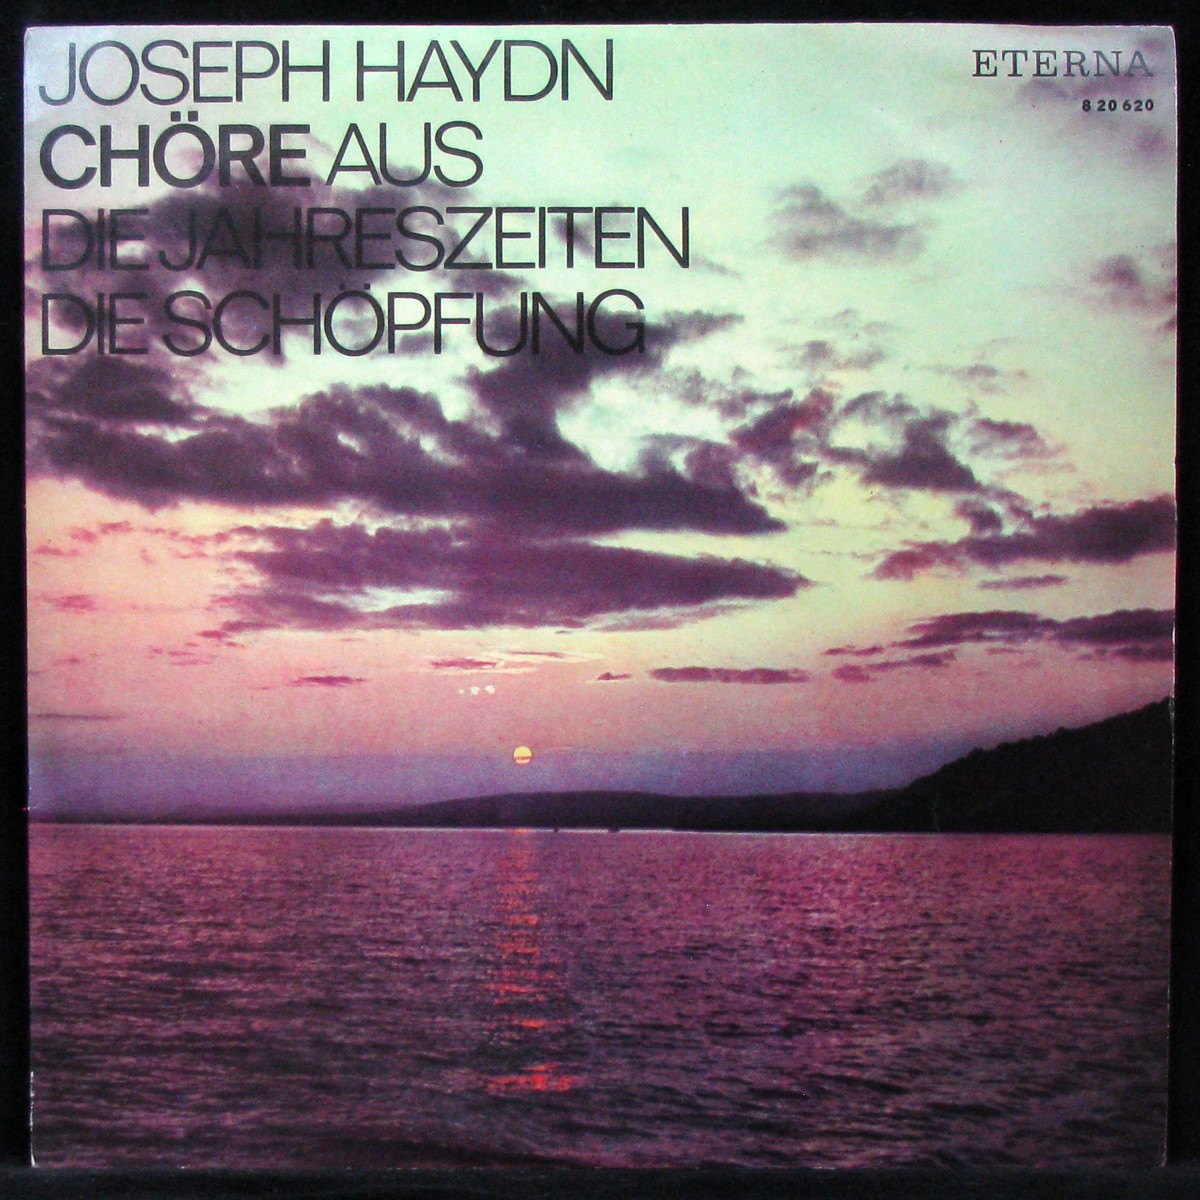 Joseph Haydn: Chore Aus Die Jahreszeiten / Die Schopfung